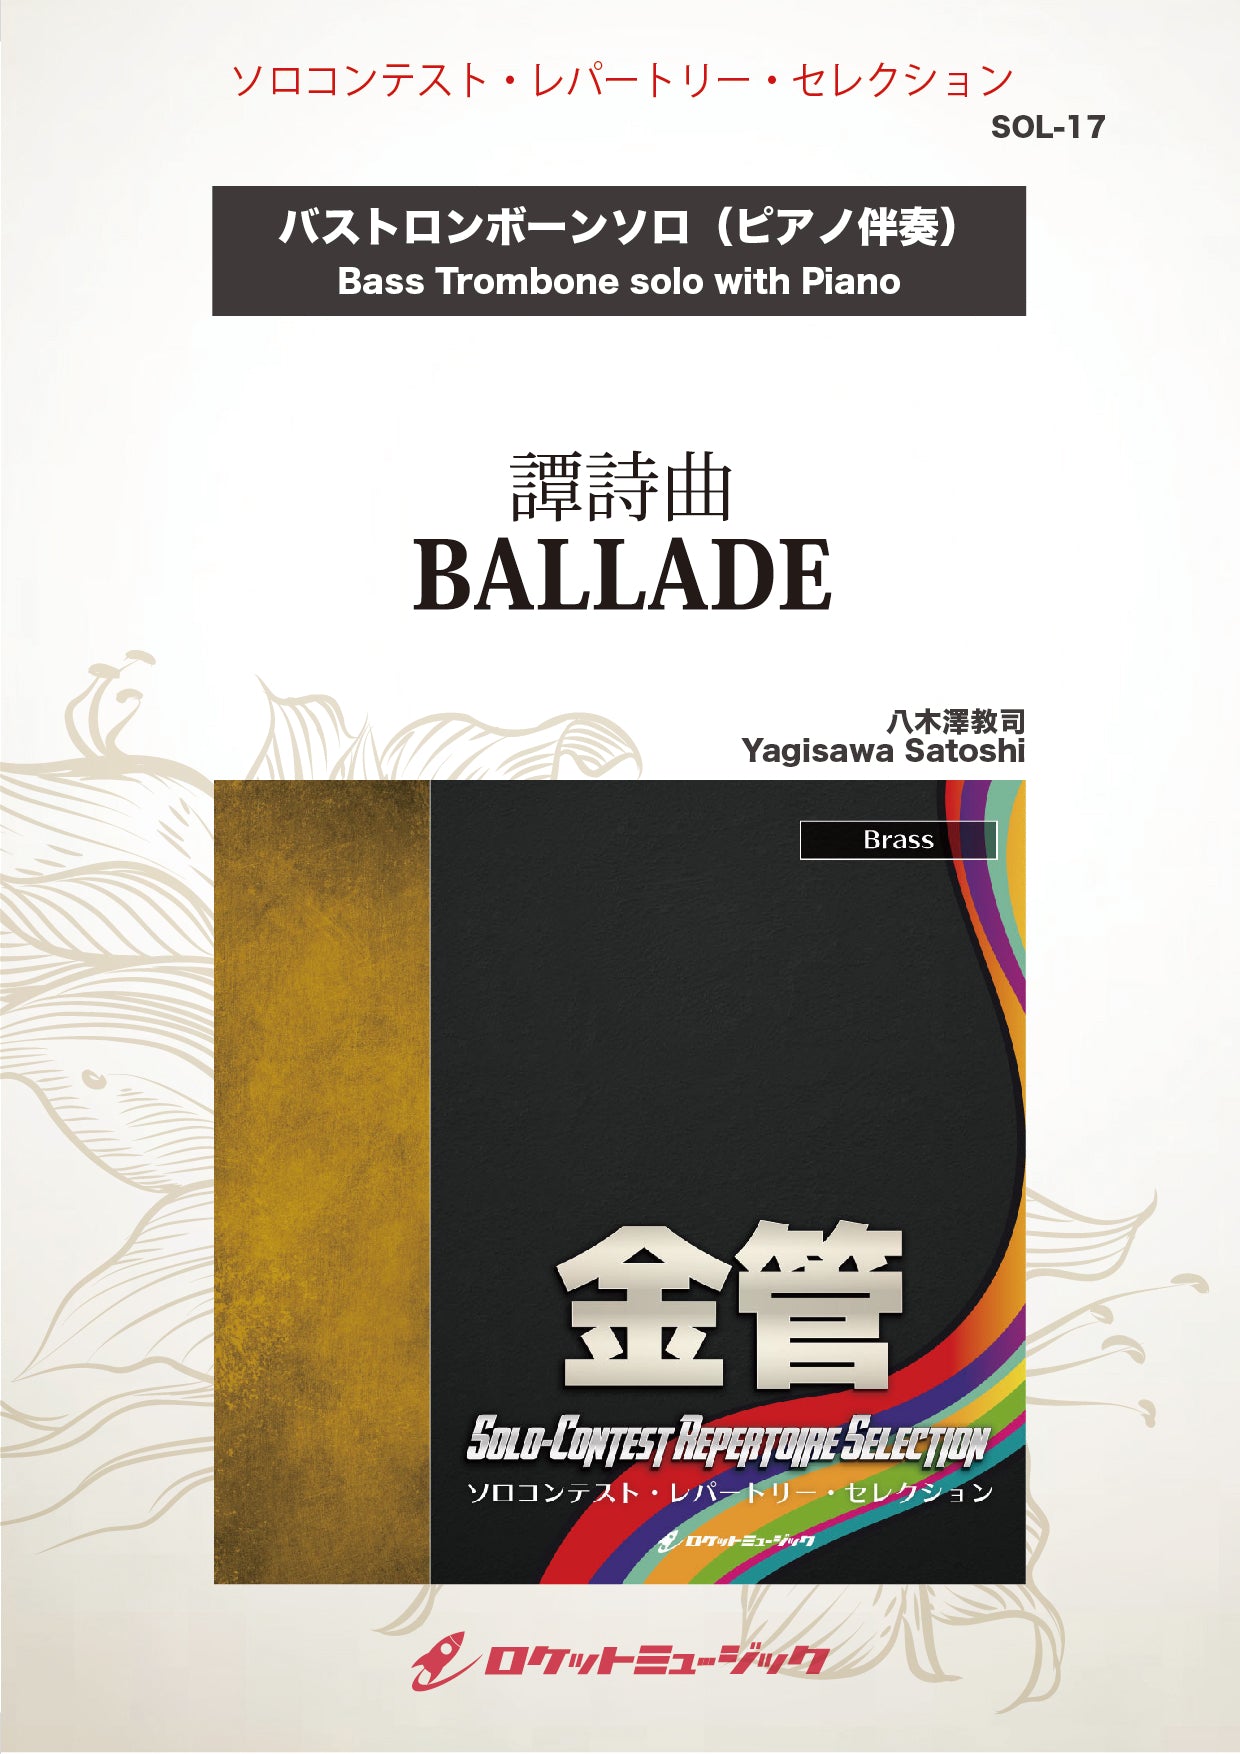 譚詩曲 BALLADE（たんしきょく）(comp:八木澤教司)【バス・トロンボーン】 ソロ楽譜